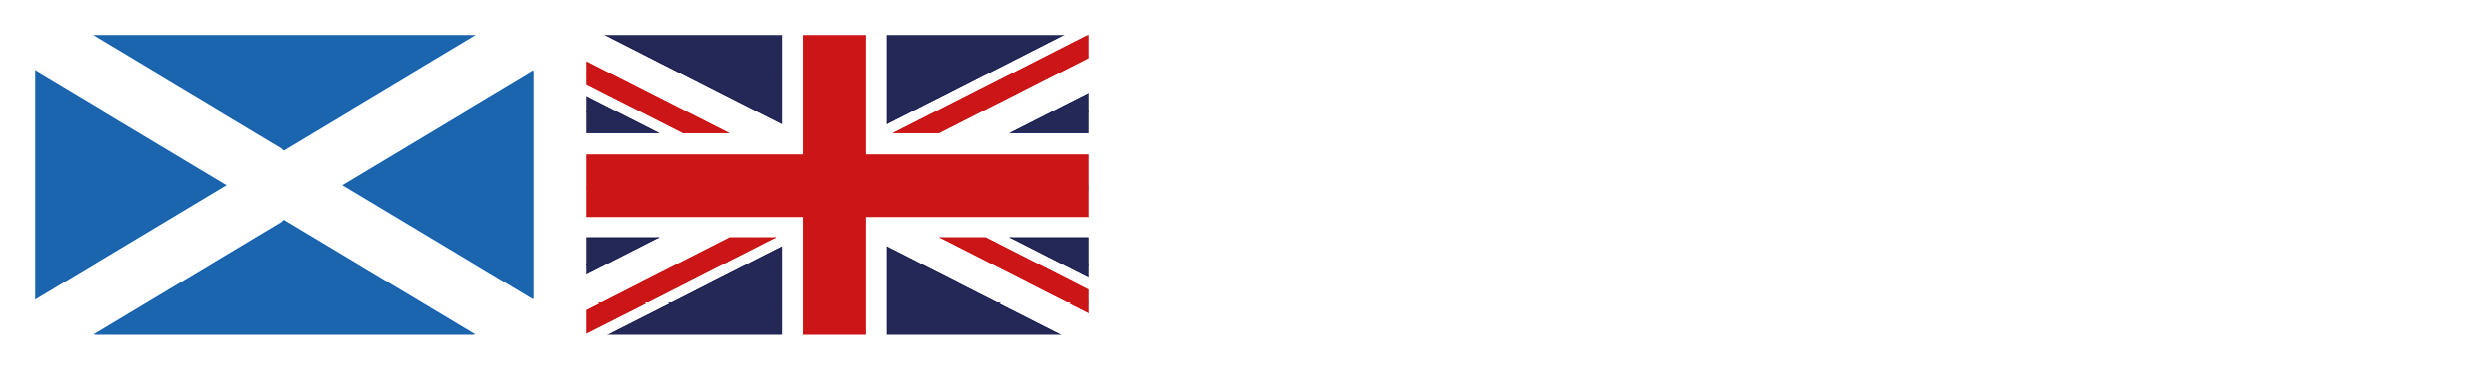 Grampian & North Scotland DA